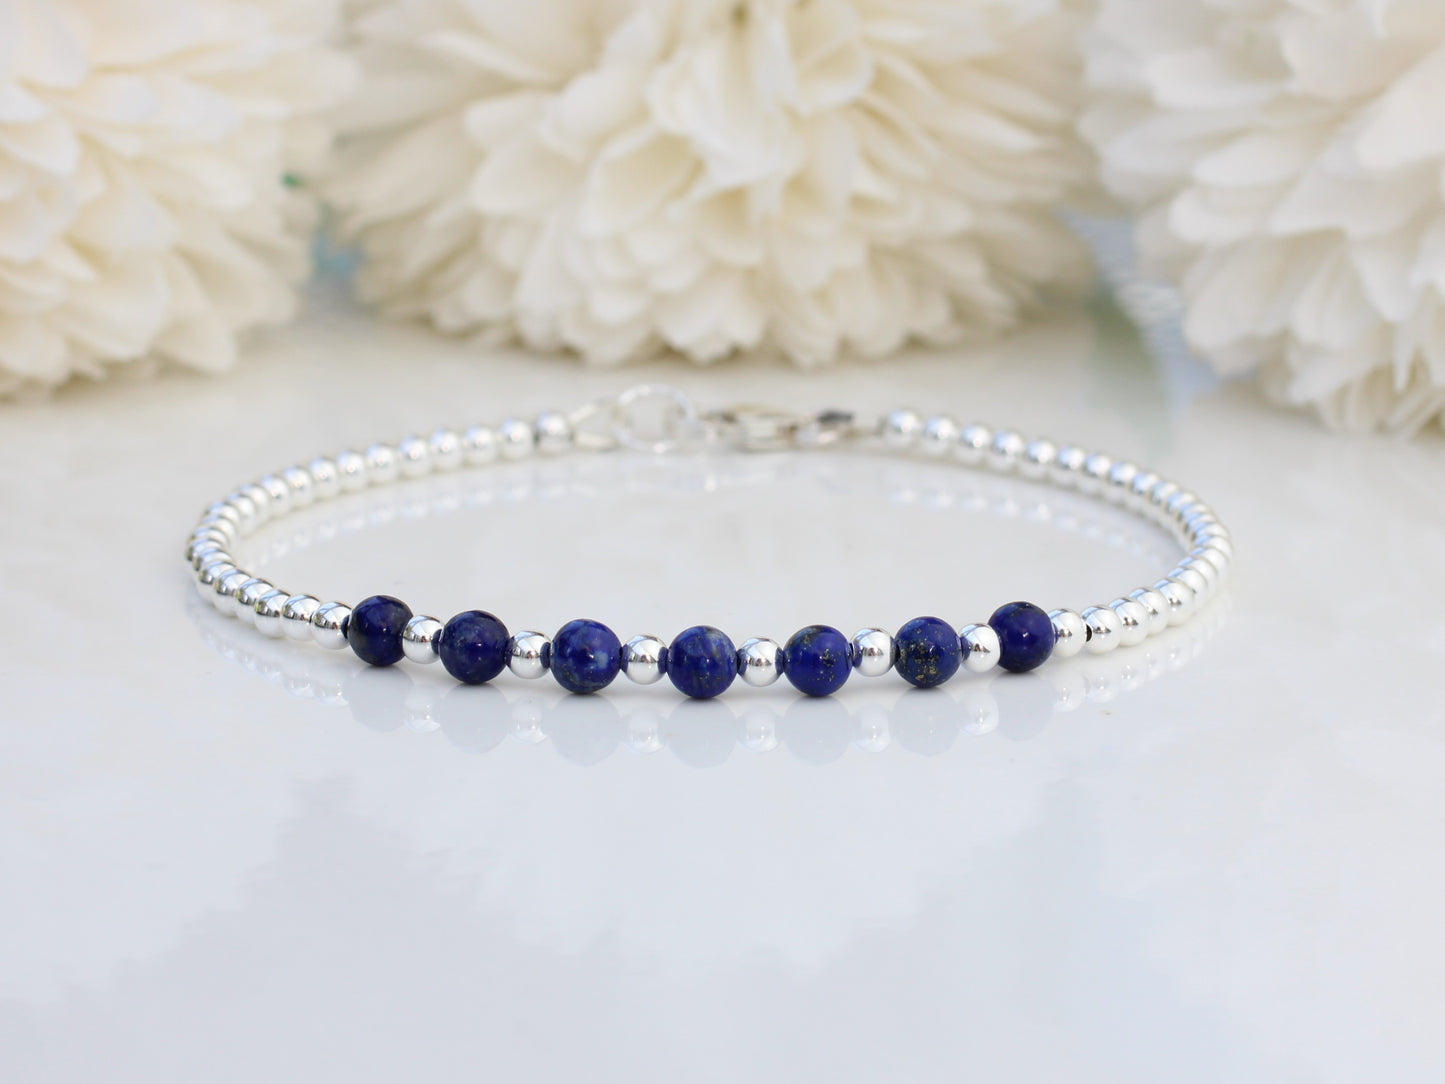 Lapis lazuli milestone bracelet in sterling silver.